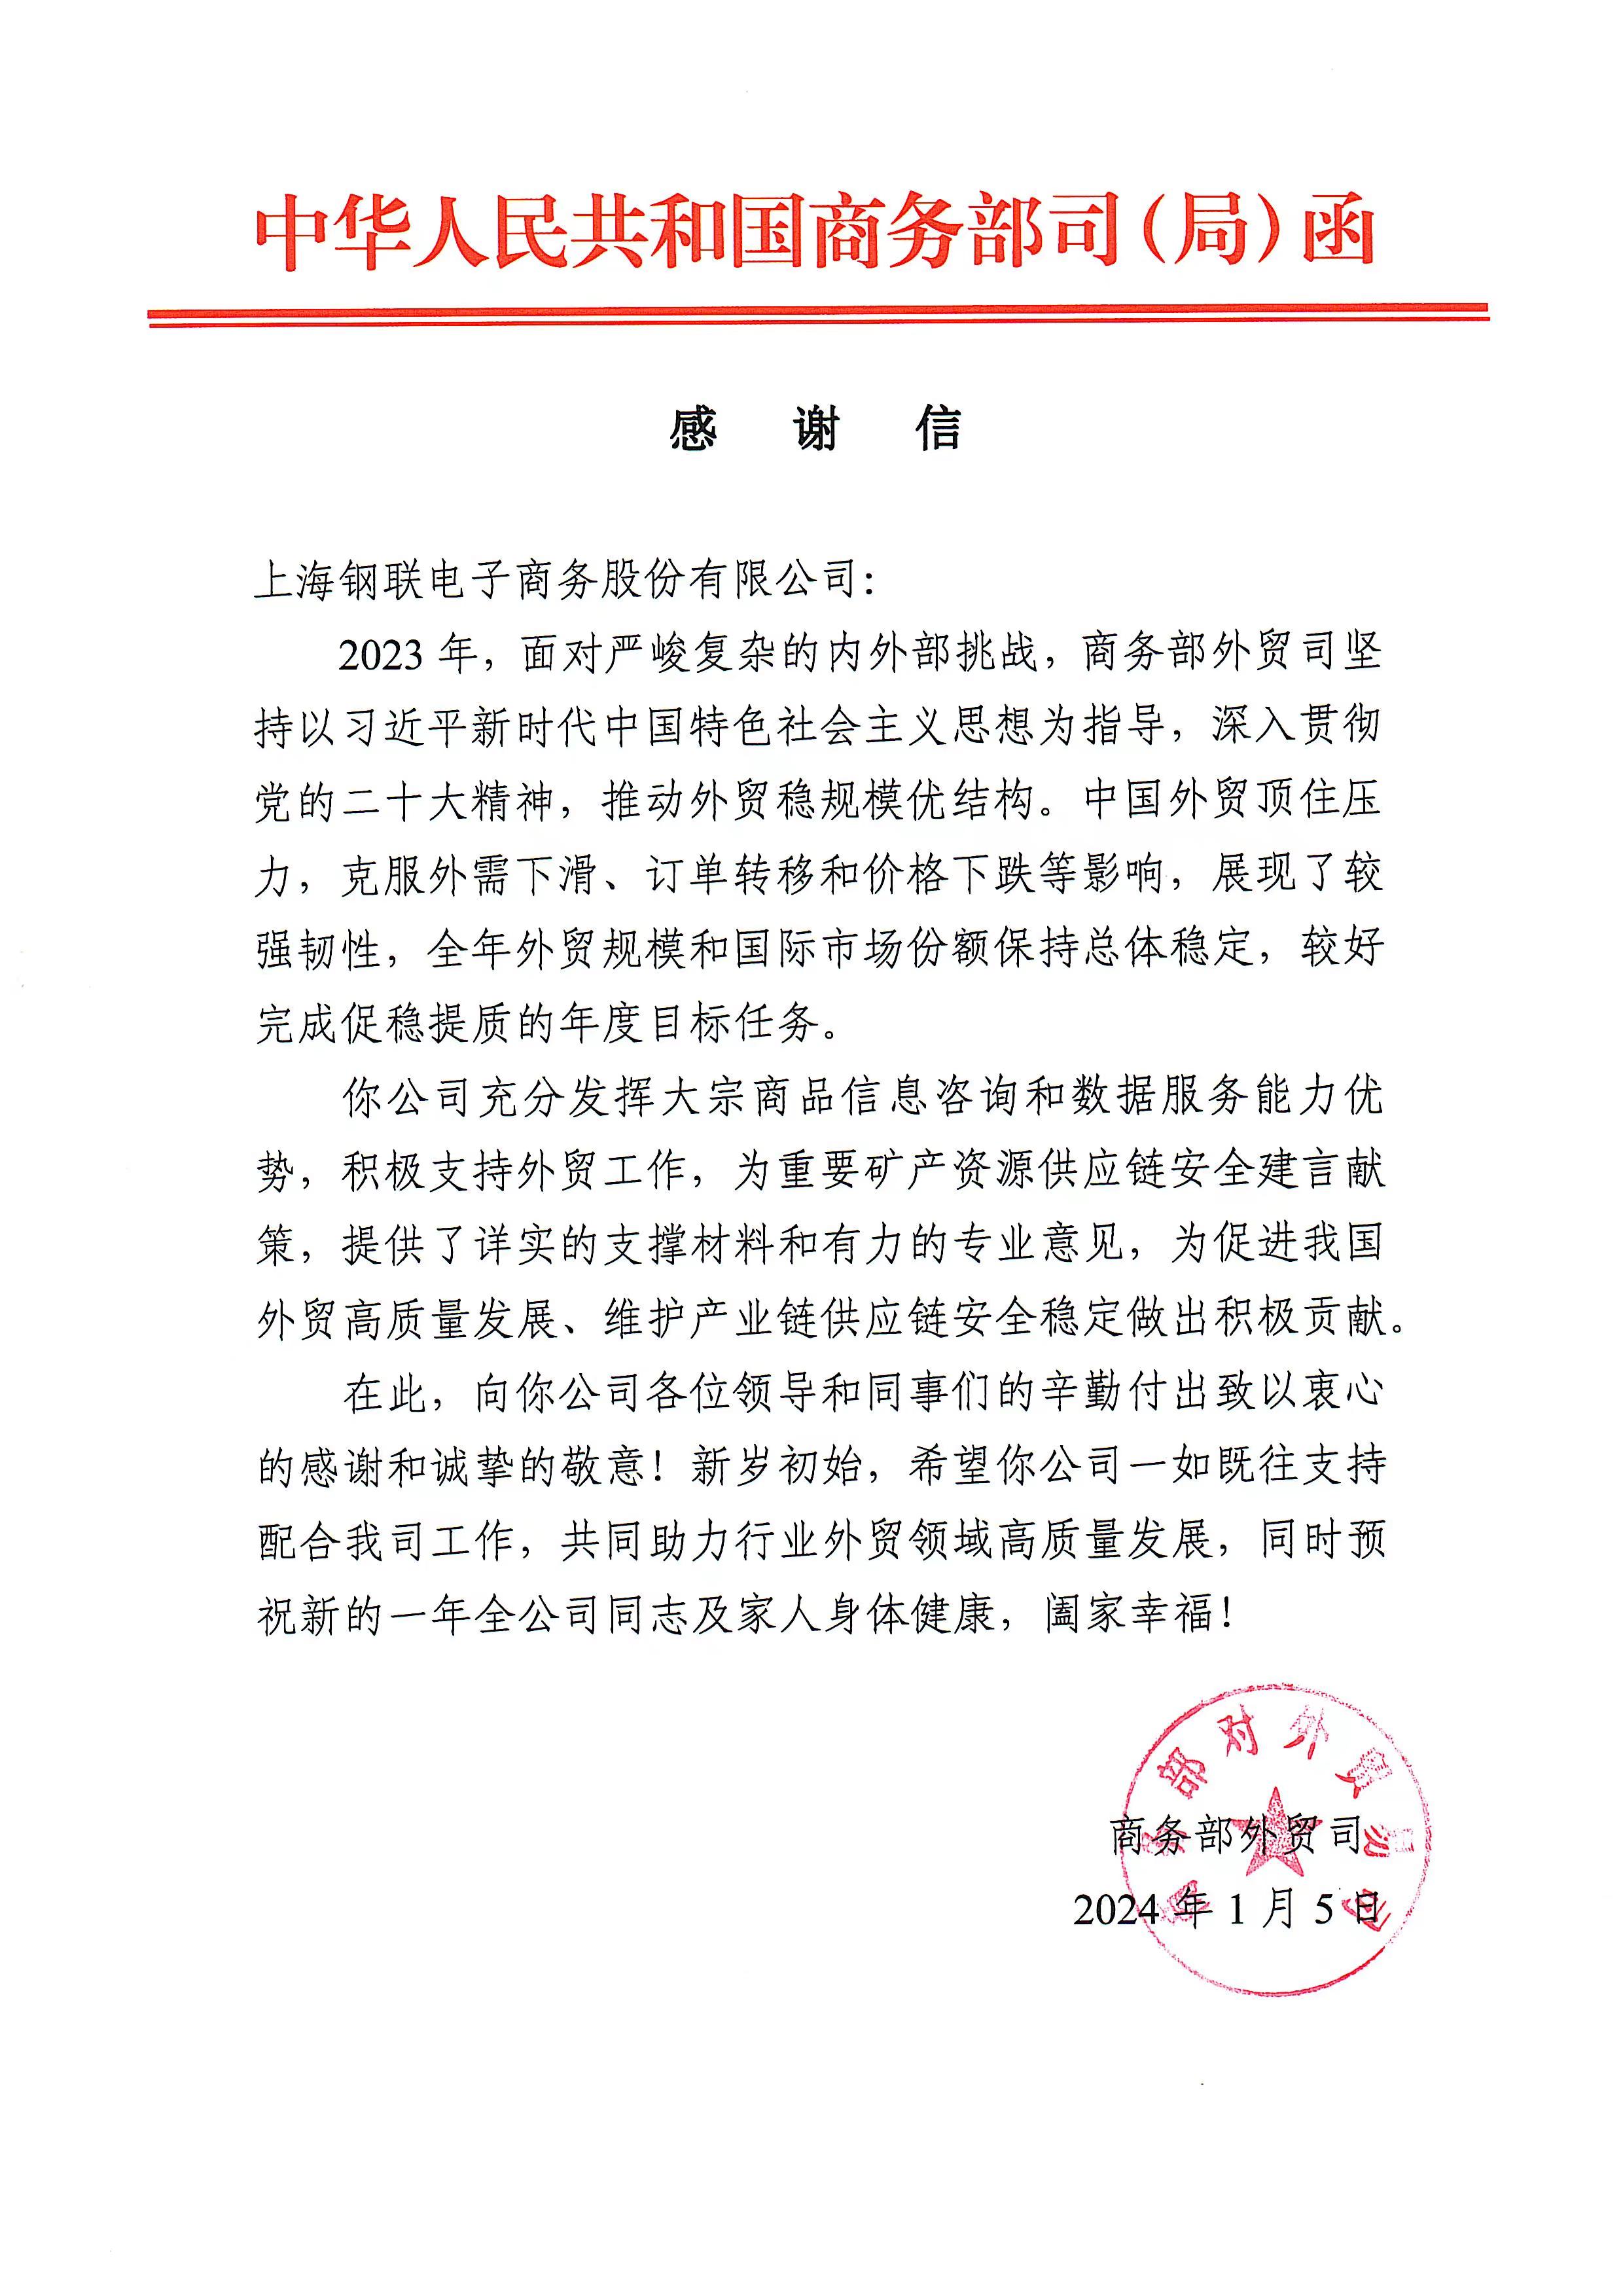 上海钢联收到商务部外贸司感谢信